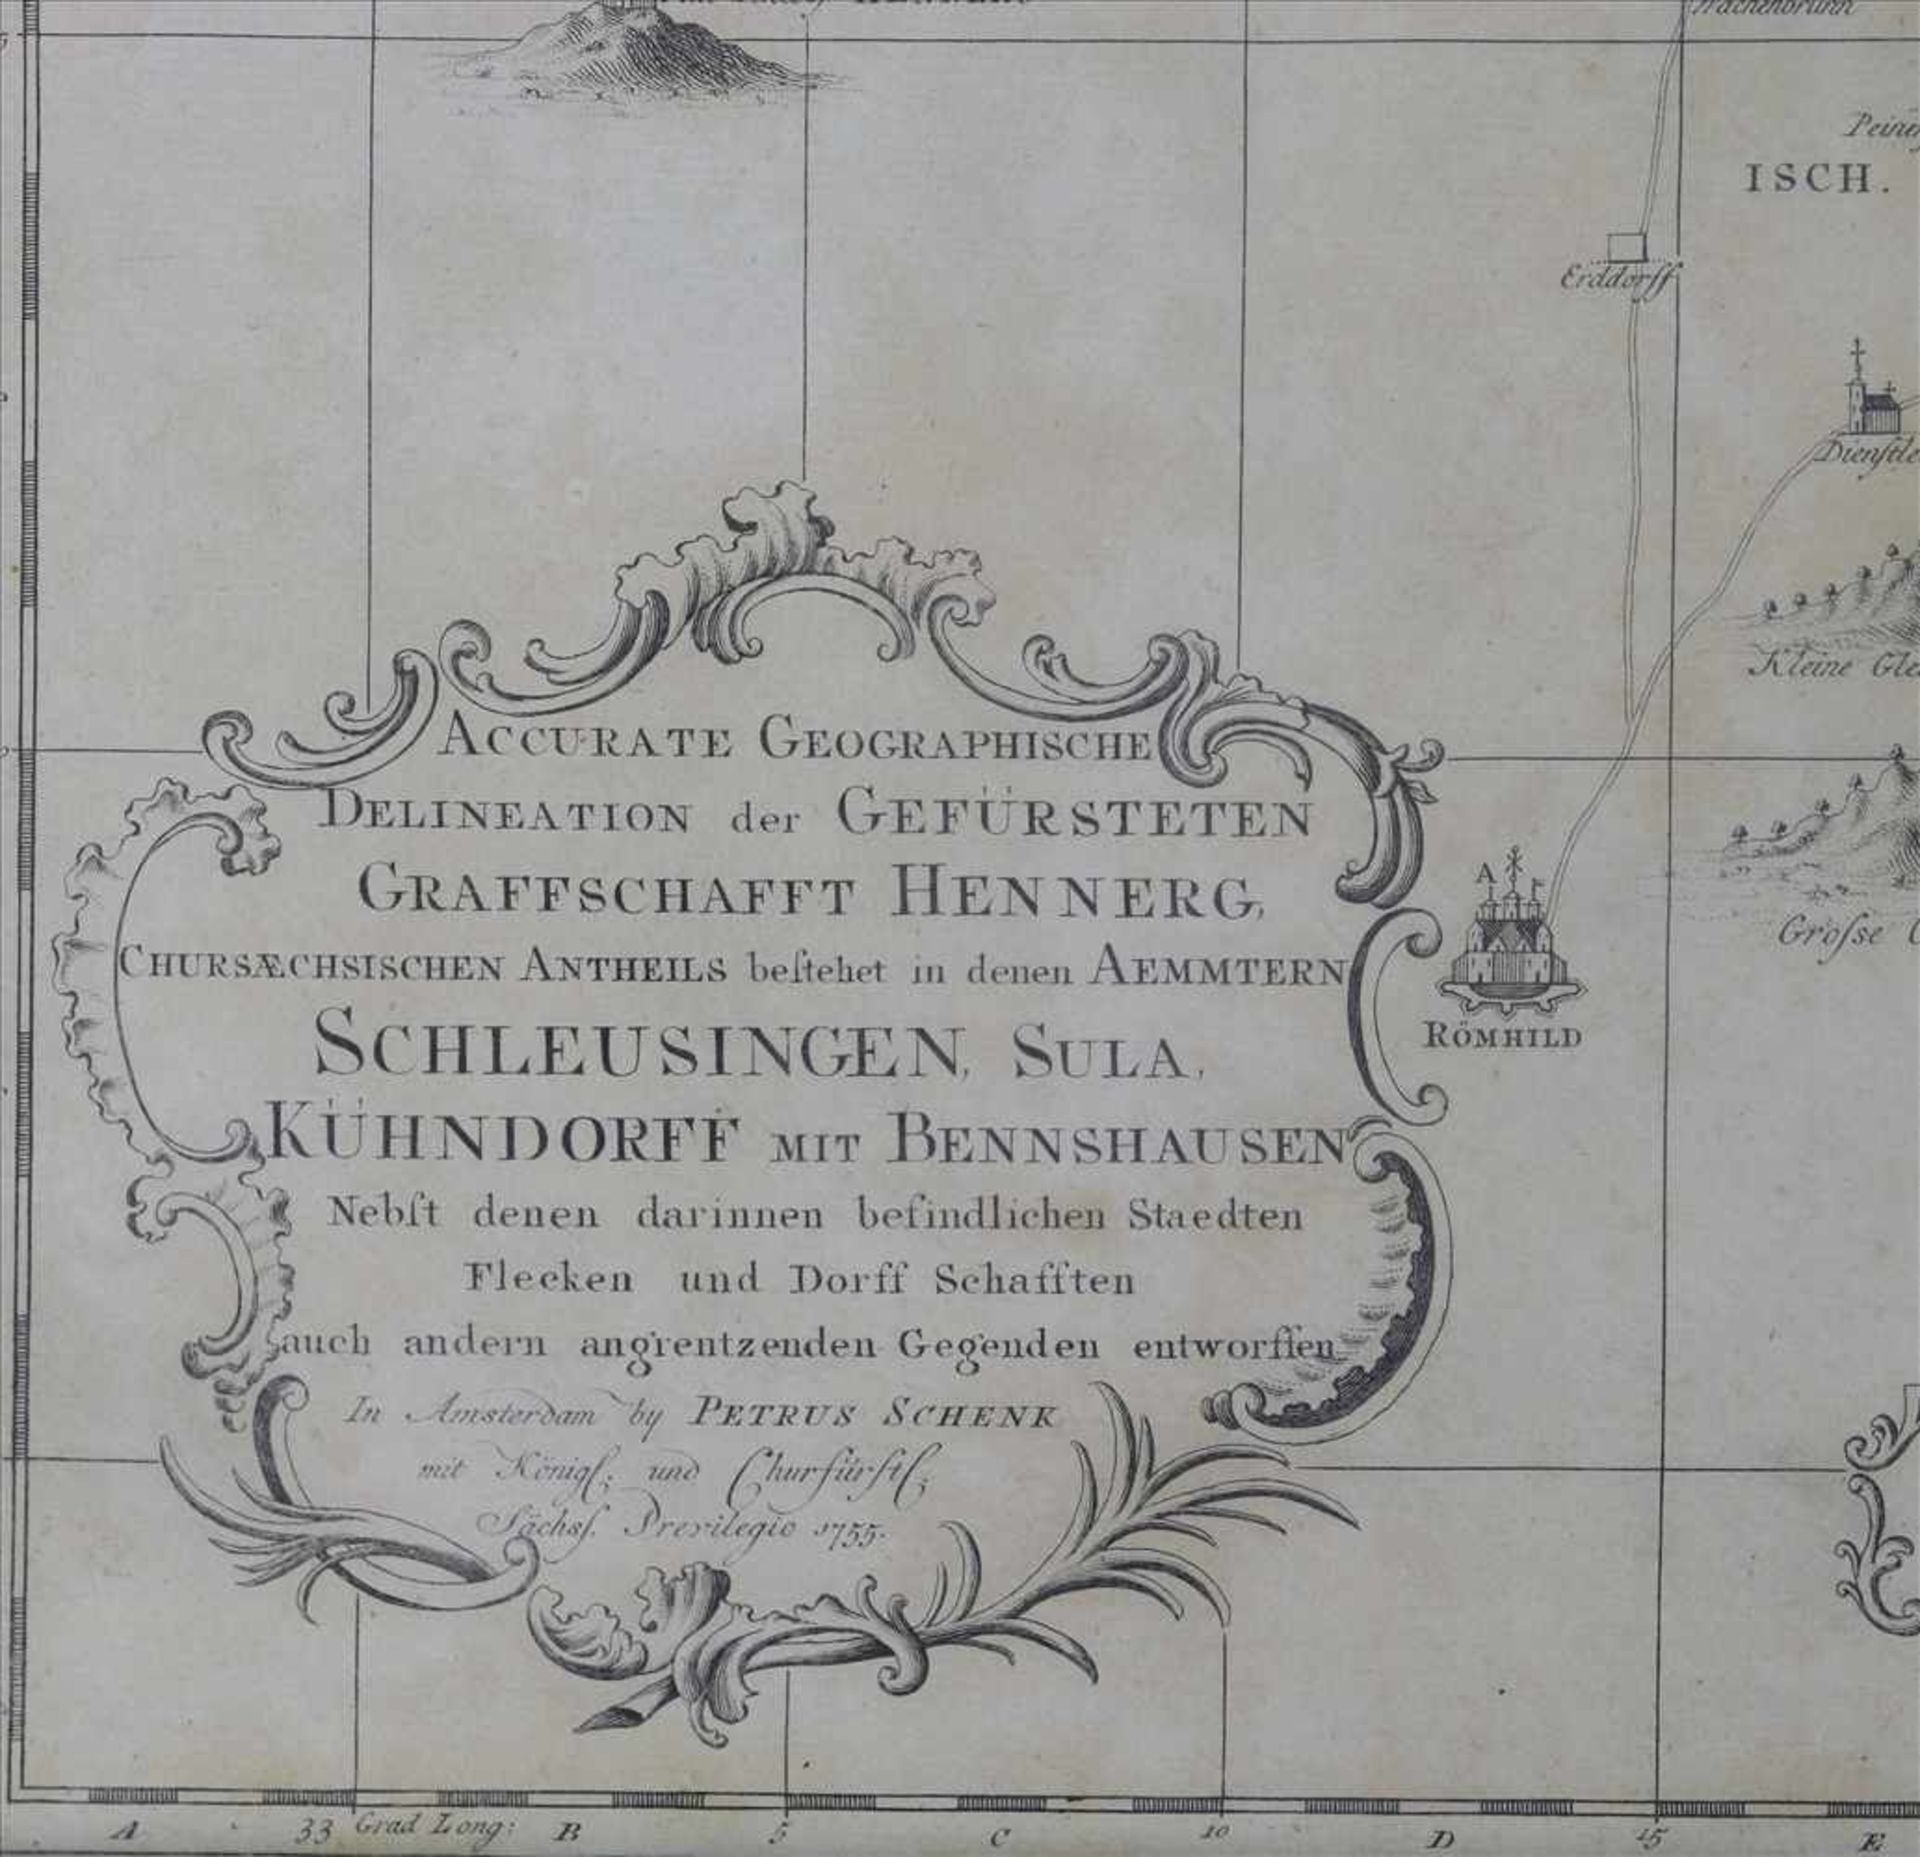 Landkarte SachsenPetrus Schenk Amsterdam 1755. Accurate Geographische Delineation der gefürsteten - Image 3 of 6